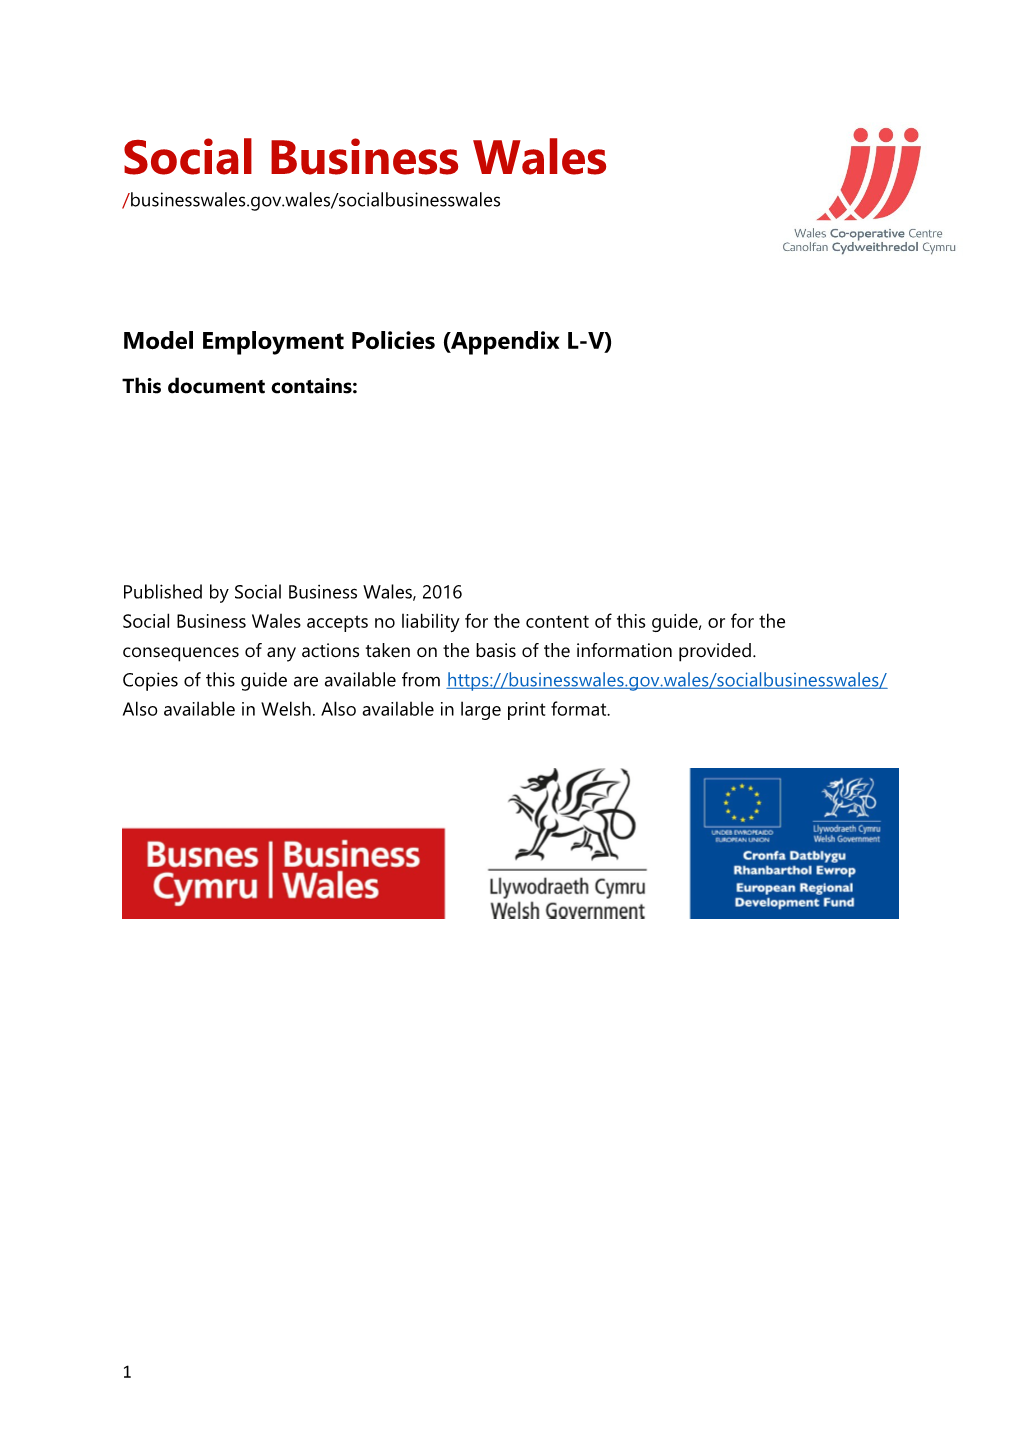 Model Employment Policies (Appendix L-V)